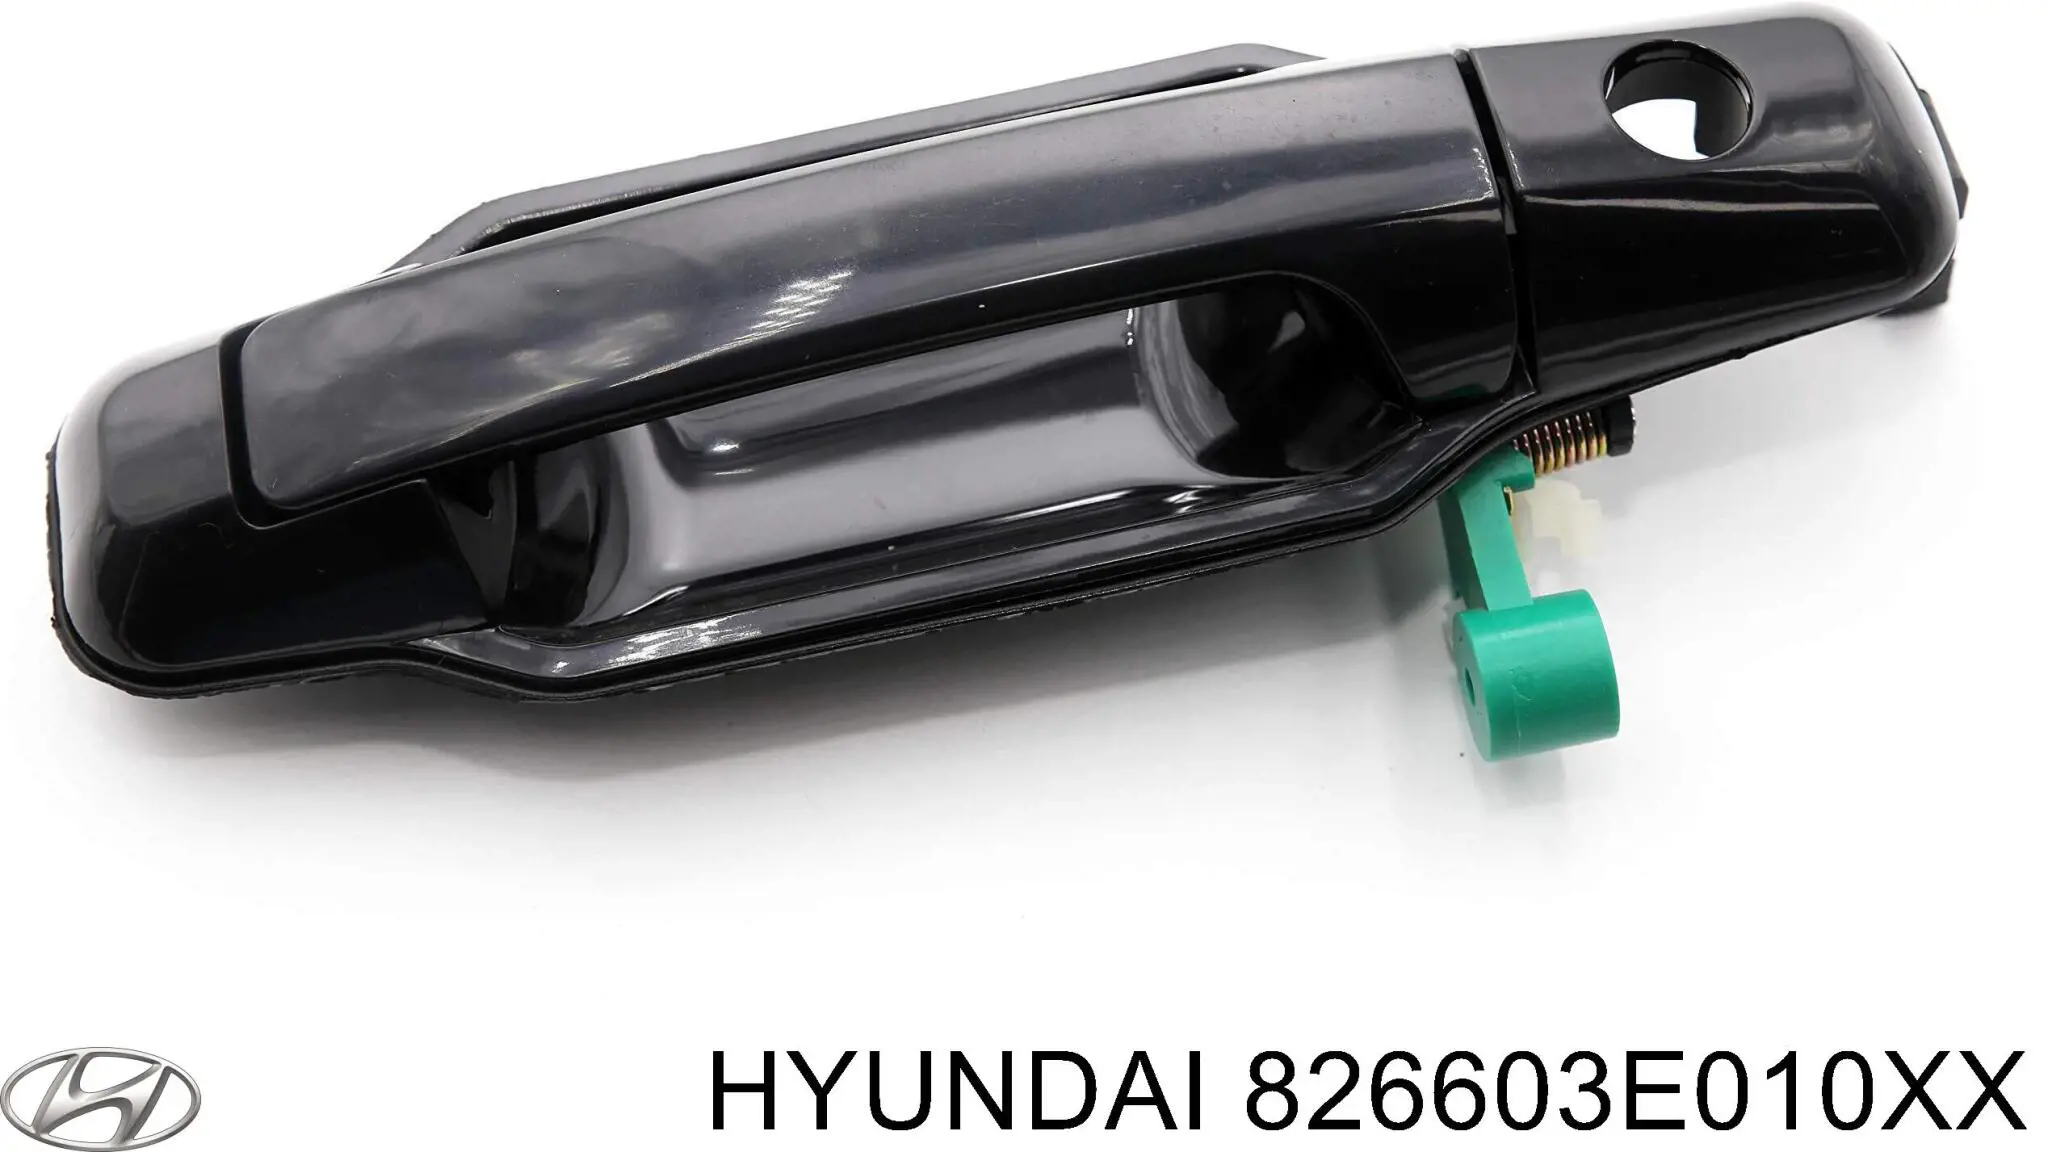 826603E040XX Hyundai/Kia tirador de puerta exterior delantero derecha